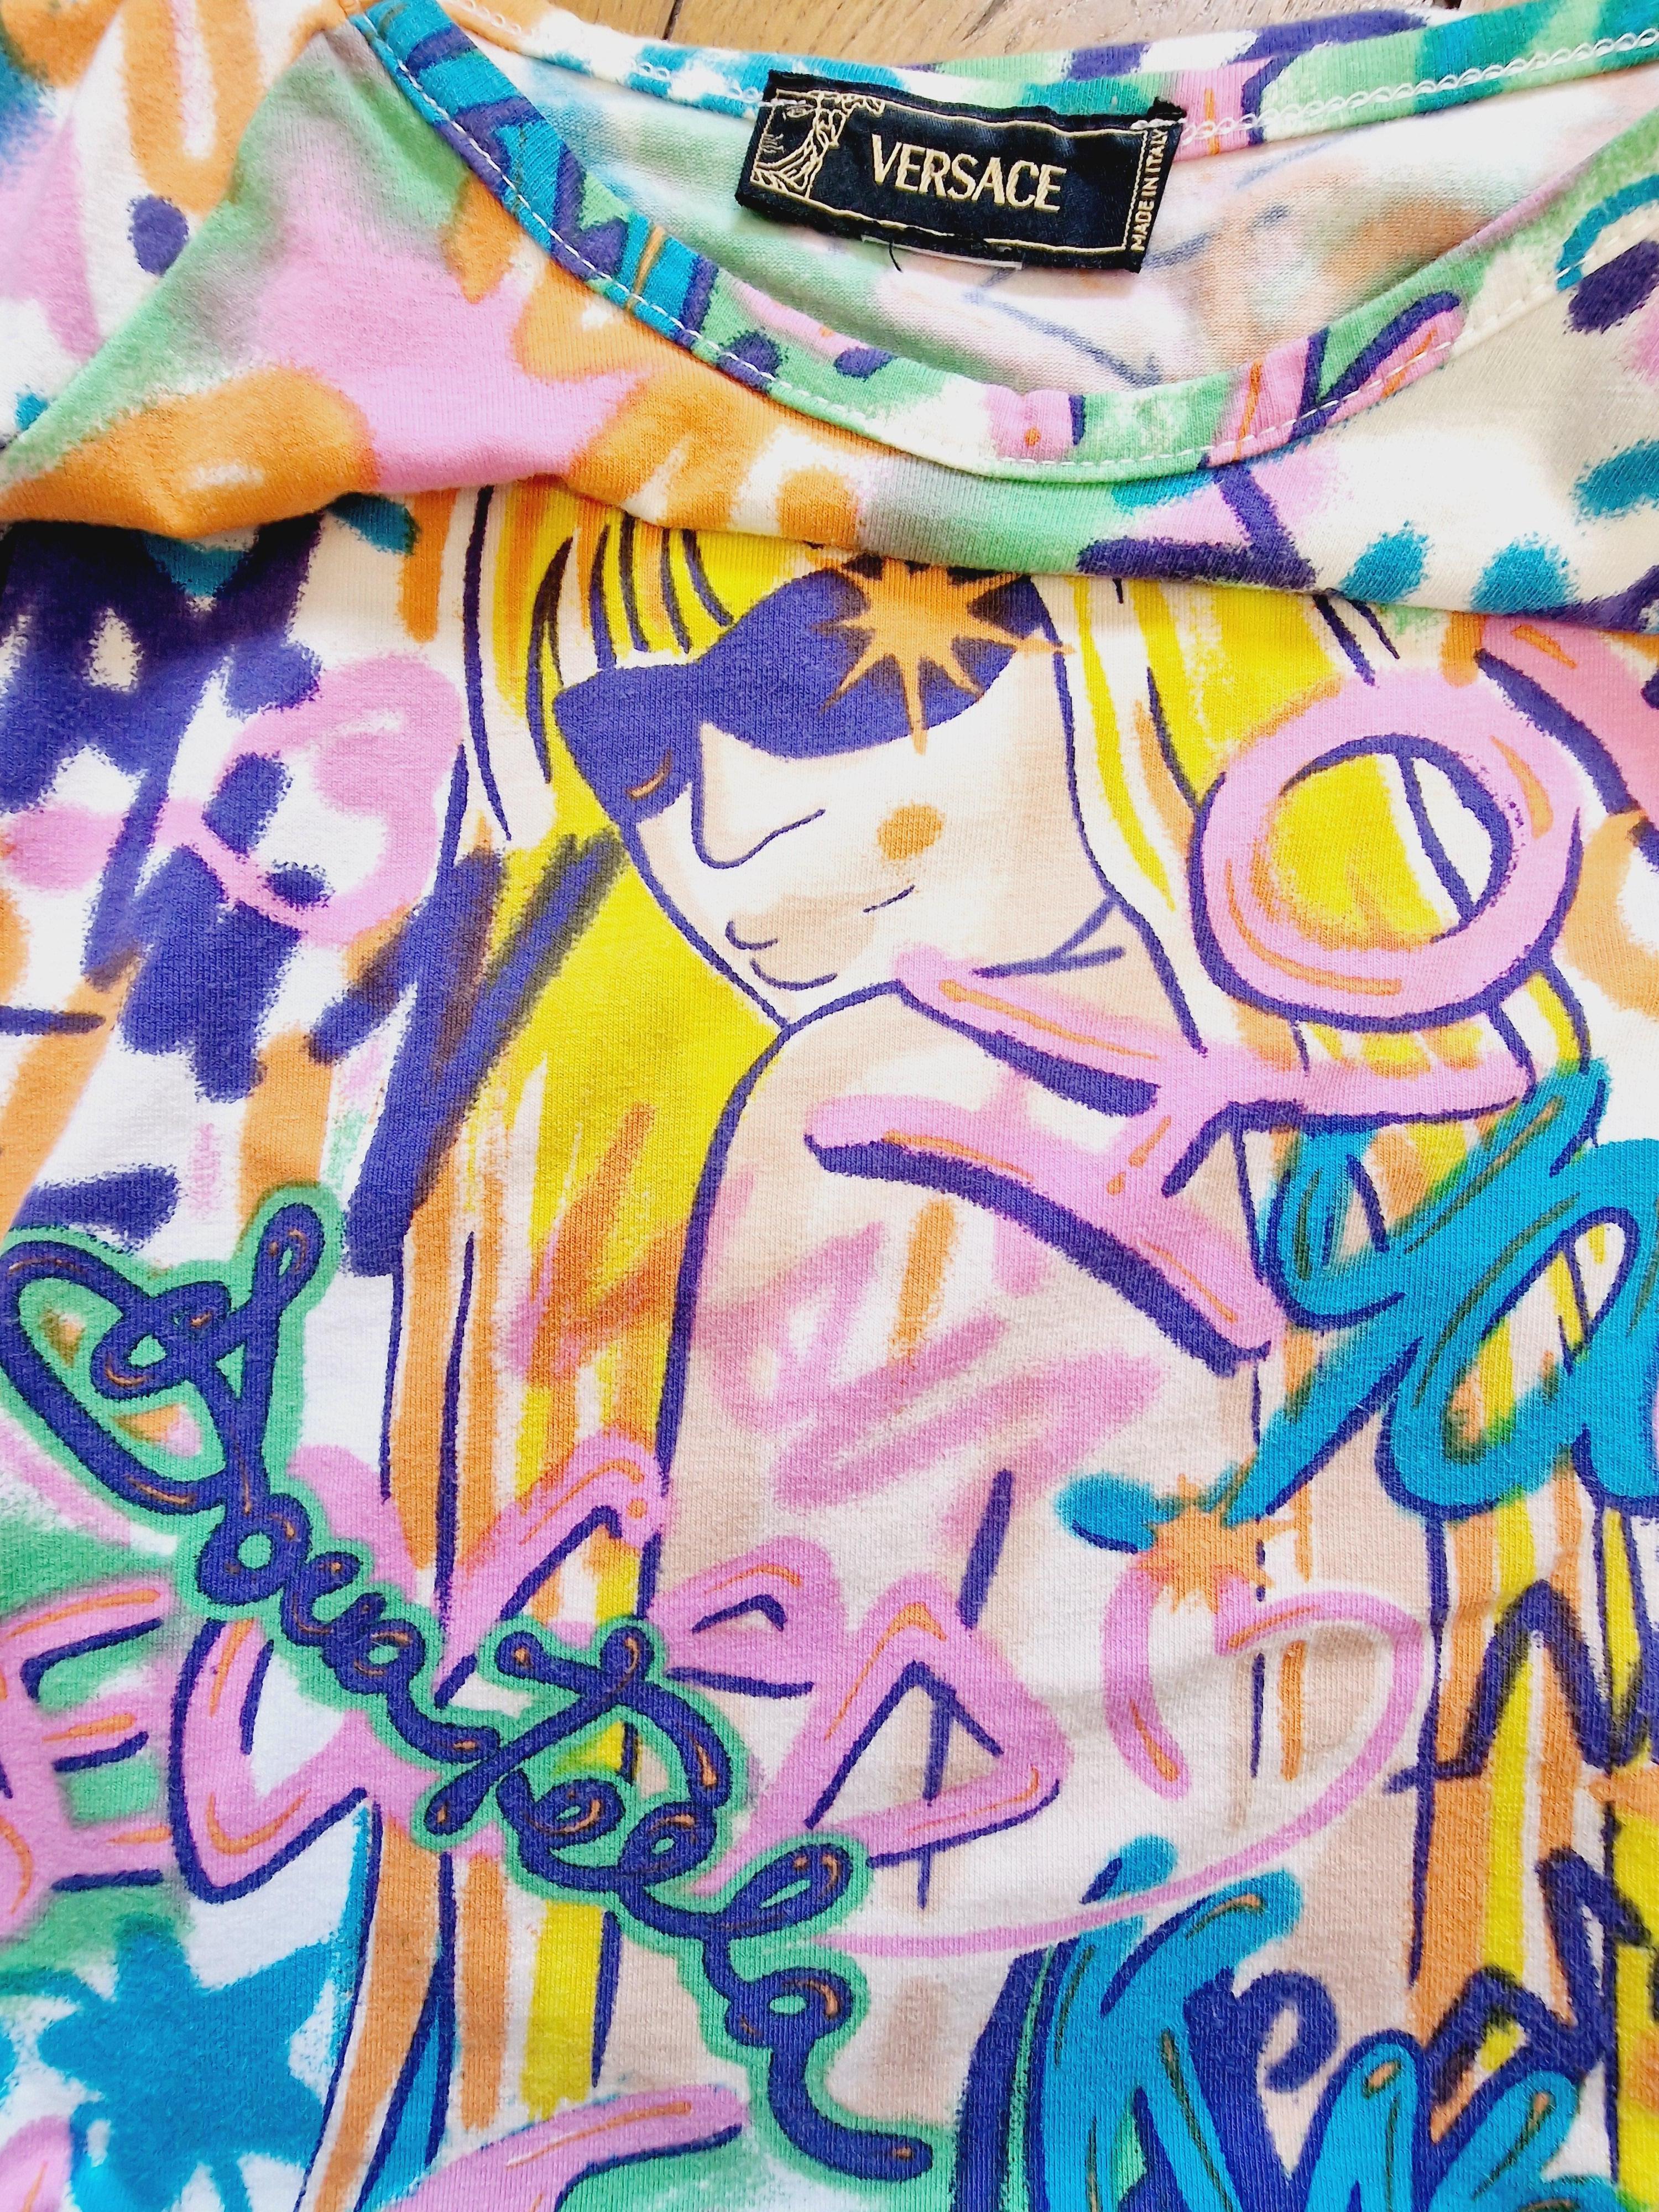 Versace Donatella Versace Graffiti Neon Männer Frauen Tag Klein Mittel Groß T-shirt Top  5